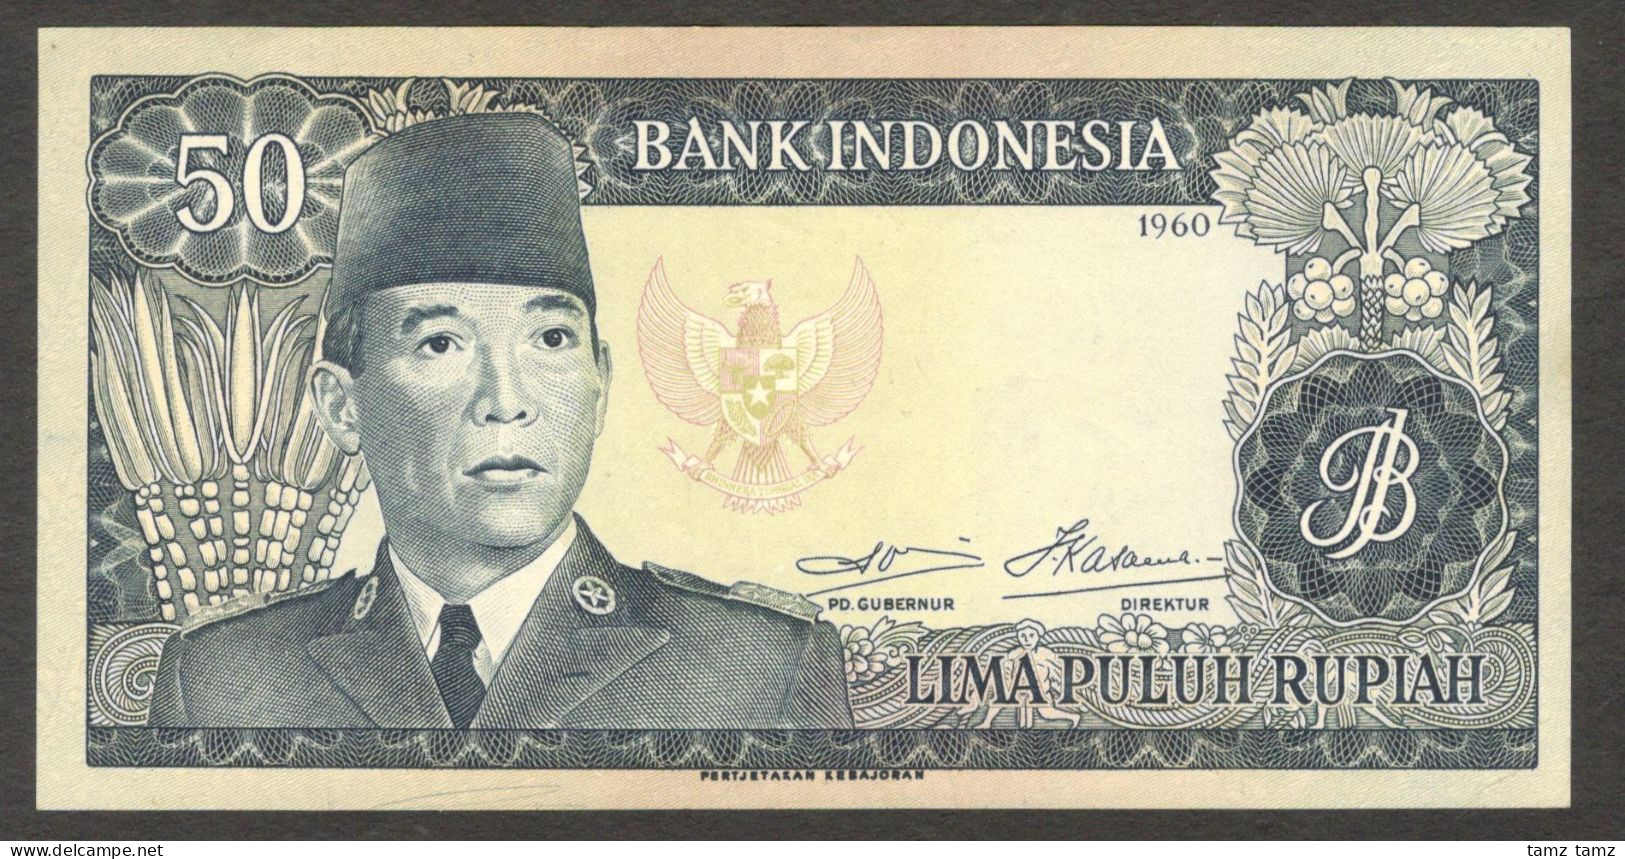 Indonesia 50 Rupiah President Soekarno Pertjetakan Kebajoran P-85b 1960 AUNC Crisp - Indonesia